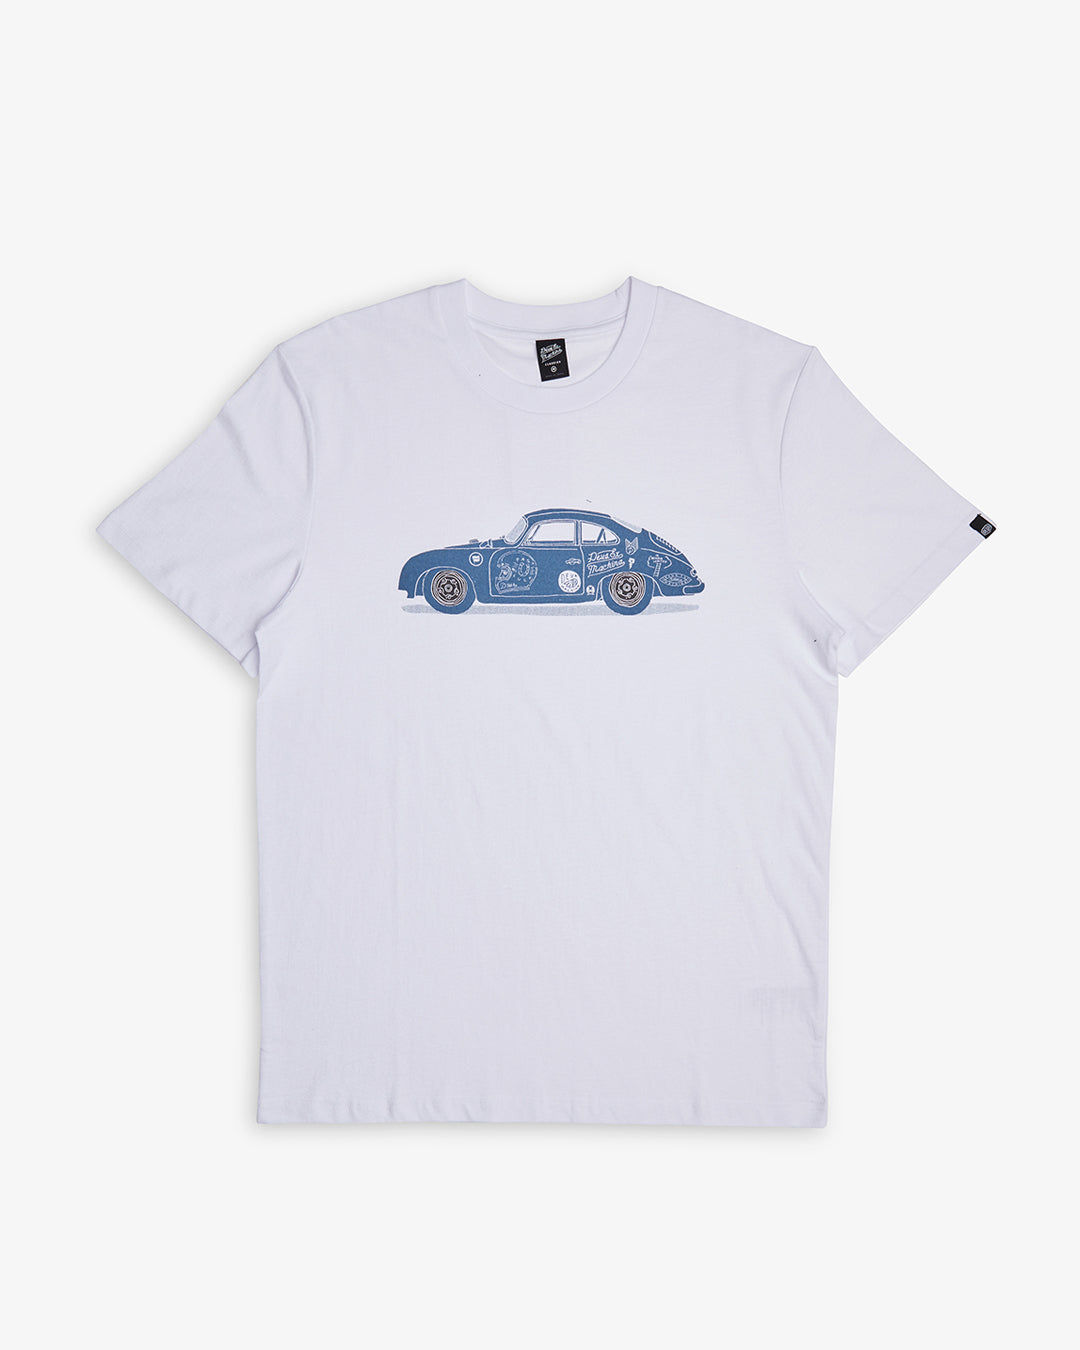 356 Porsche Tee White - Deus Ex Machina